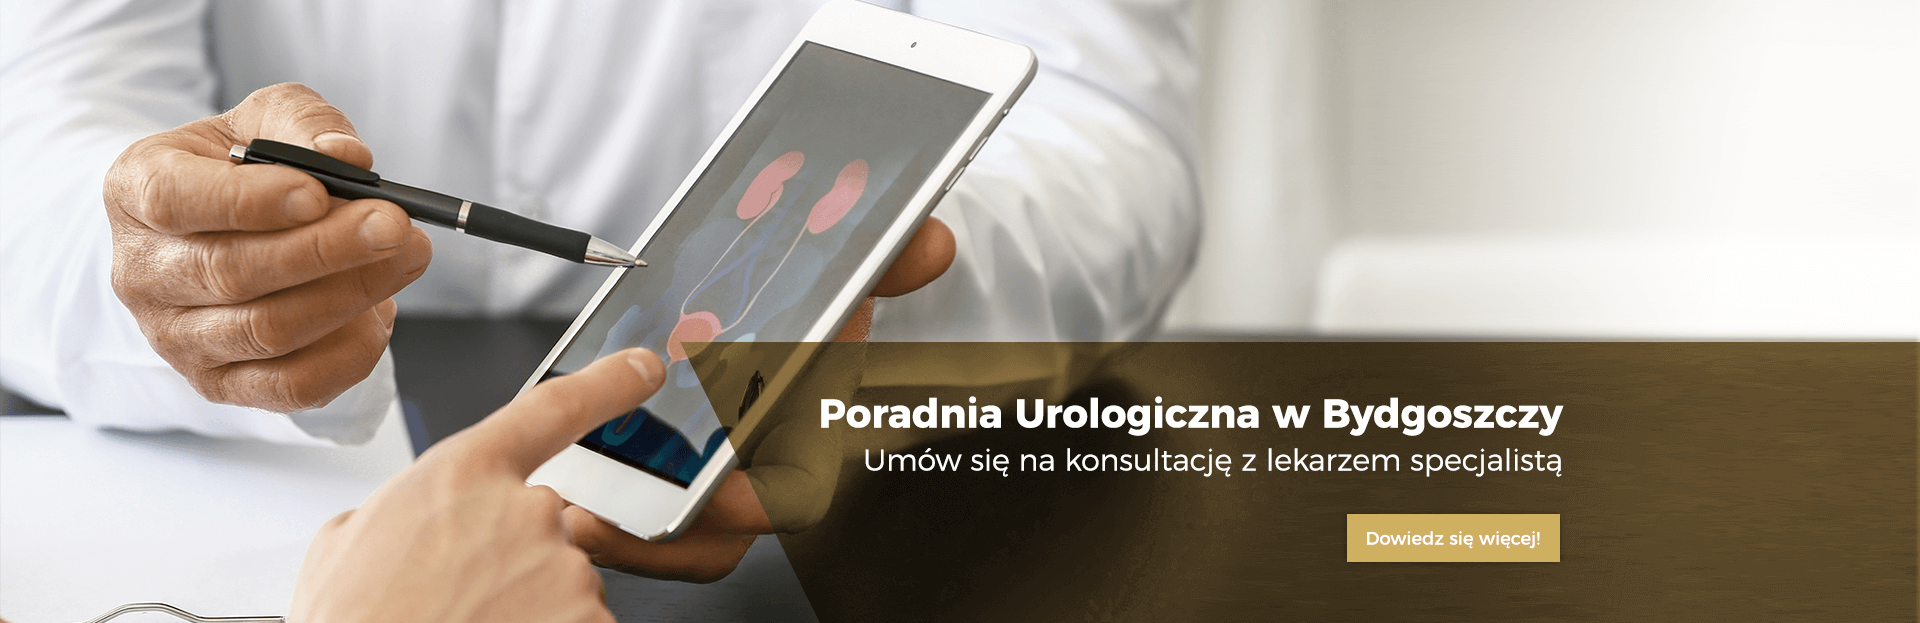 Poradnia Urologiczna w Bydgoszczy Nasz Lekarz slajd (1)